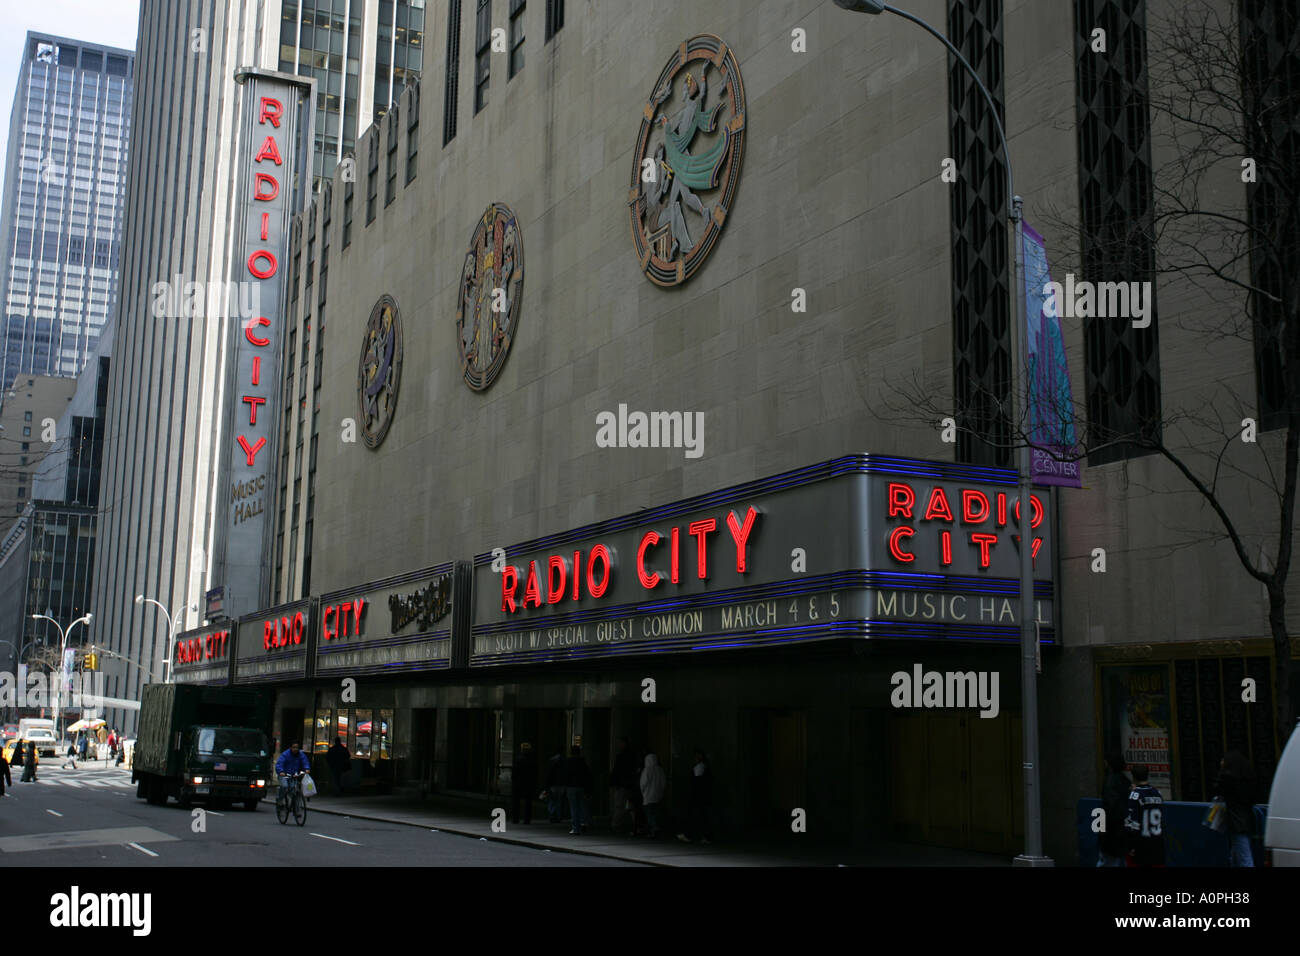 Célèbre New York City Landmark Building le Radio City Music Hall Building broadway NYC USA Amérique latine Banque D'Images